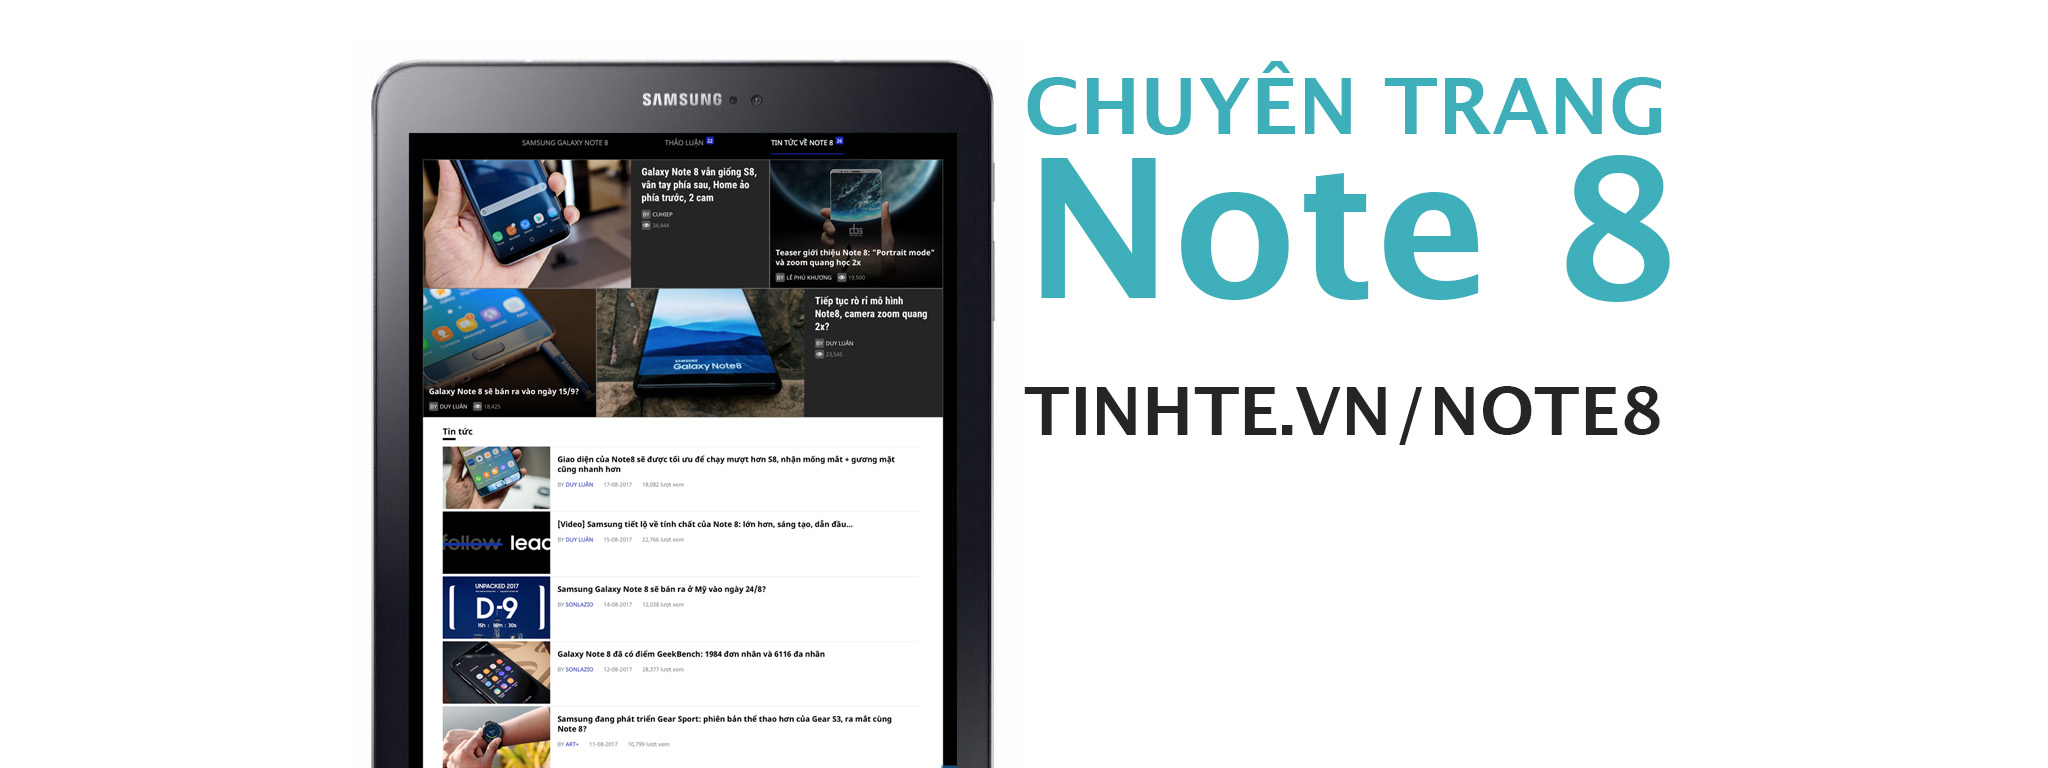 Giới thiệu chuyên trang Galaxy Note 8, chia sẻ và trúng thưởng